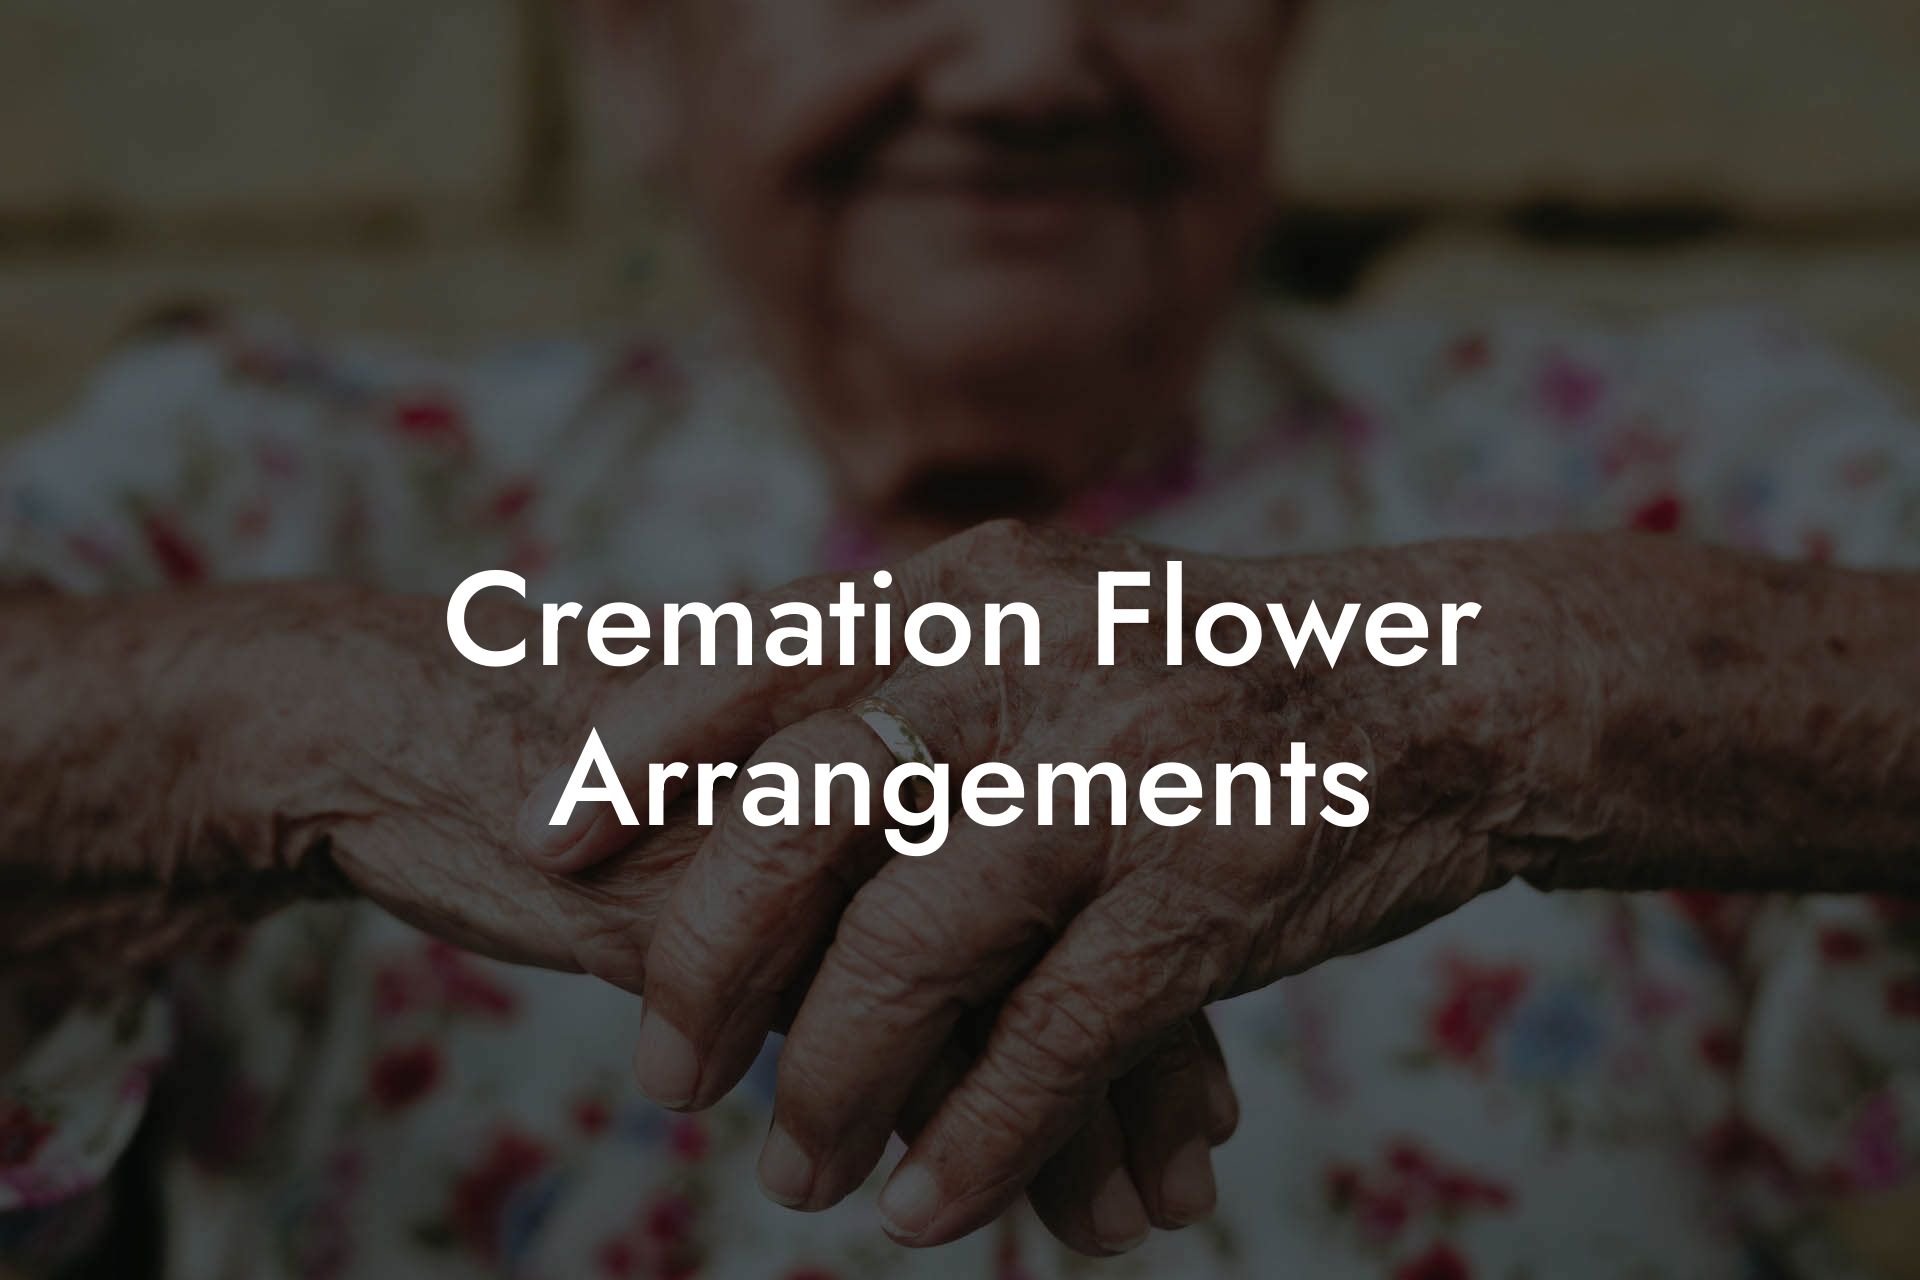 Cremation Flower Arrangements